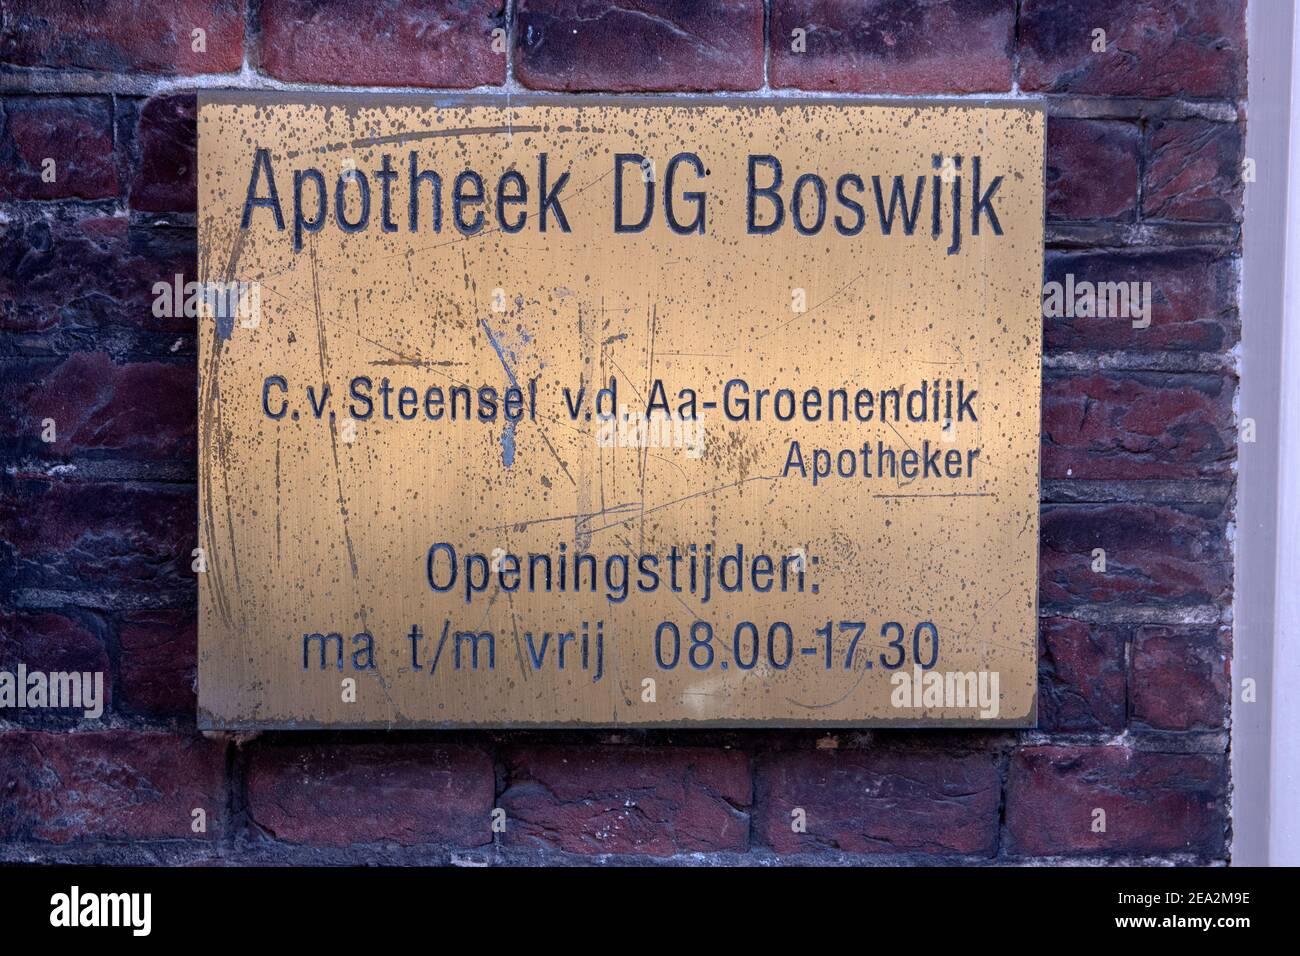 Billboard Apotheek DG Boswijk At Utrecht The Netherlands 27-12-2019 Stock Photo